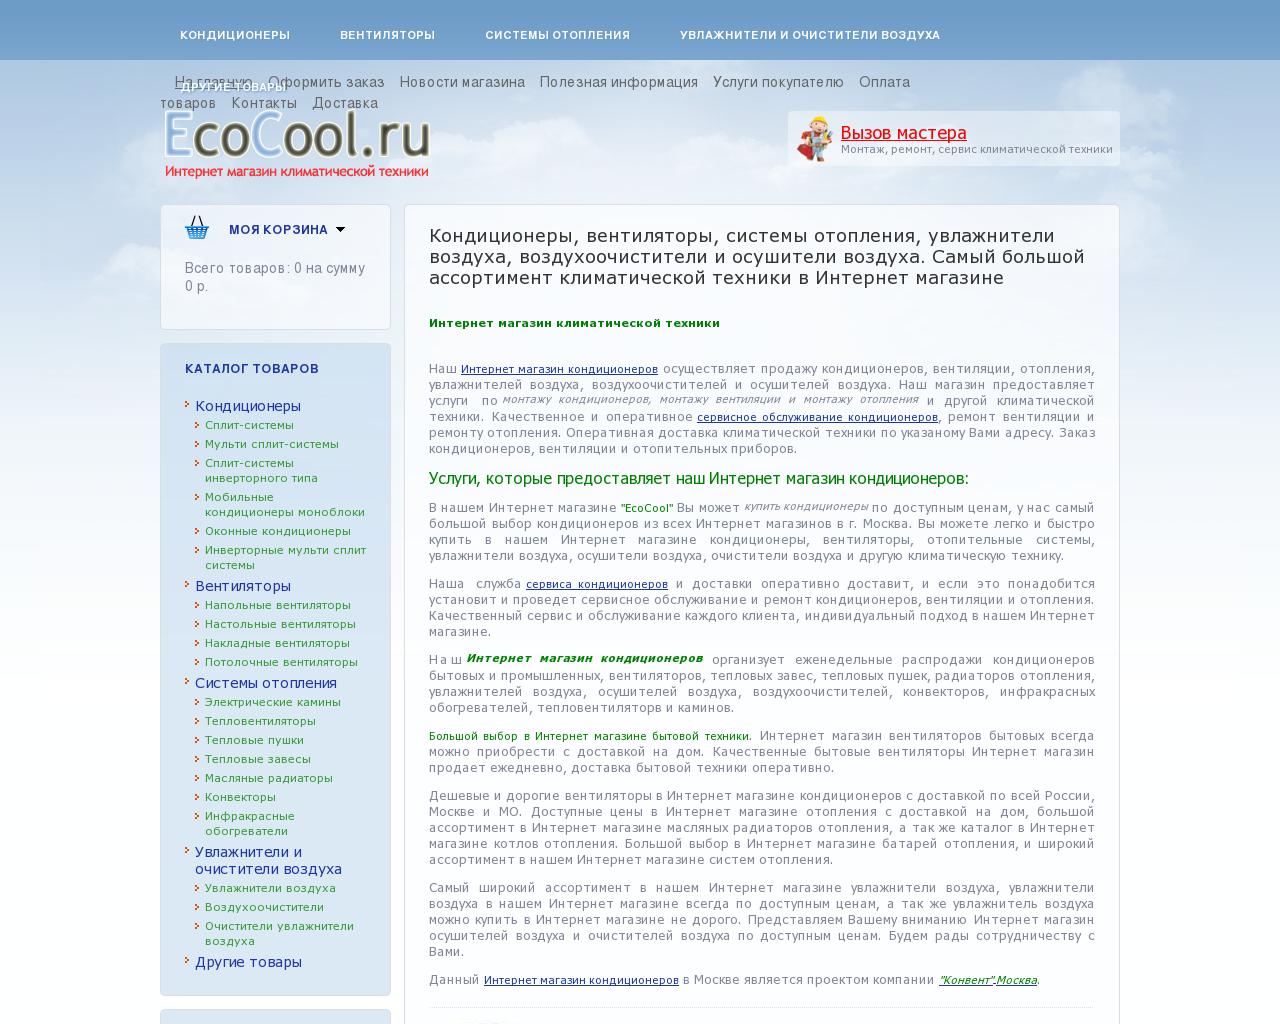 Изображение сайта ecocool.ru в разрешении 1280x1024